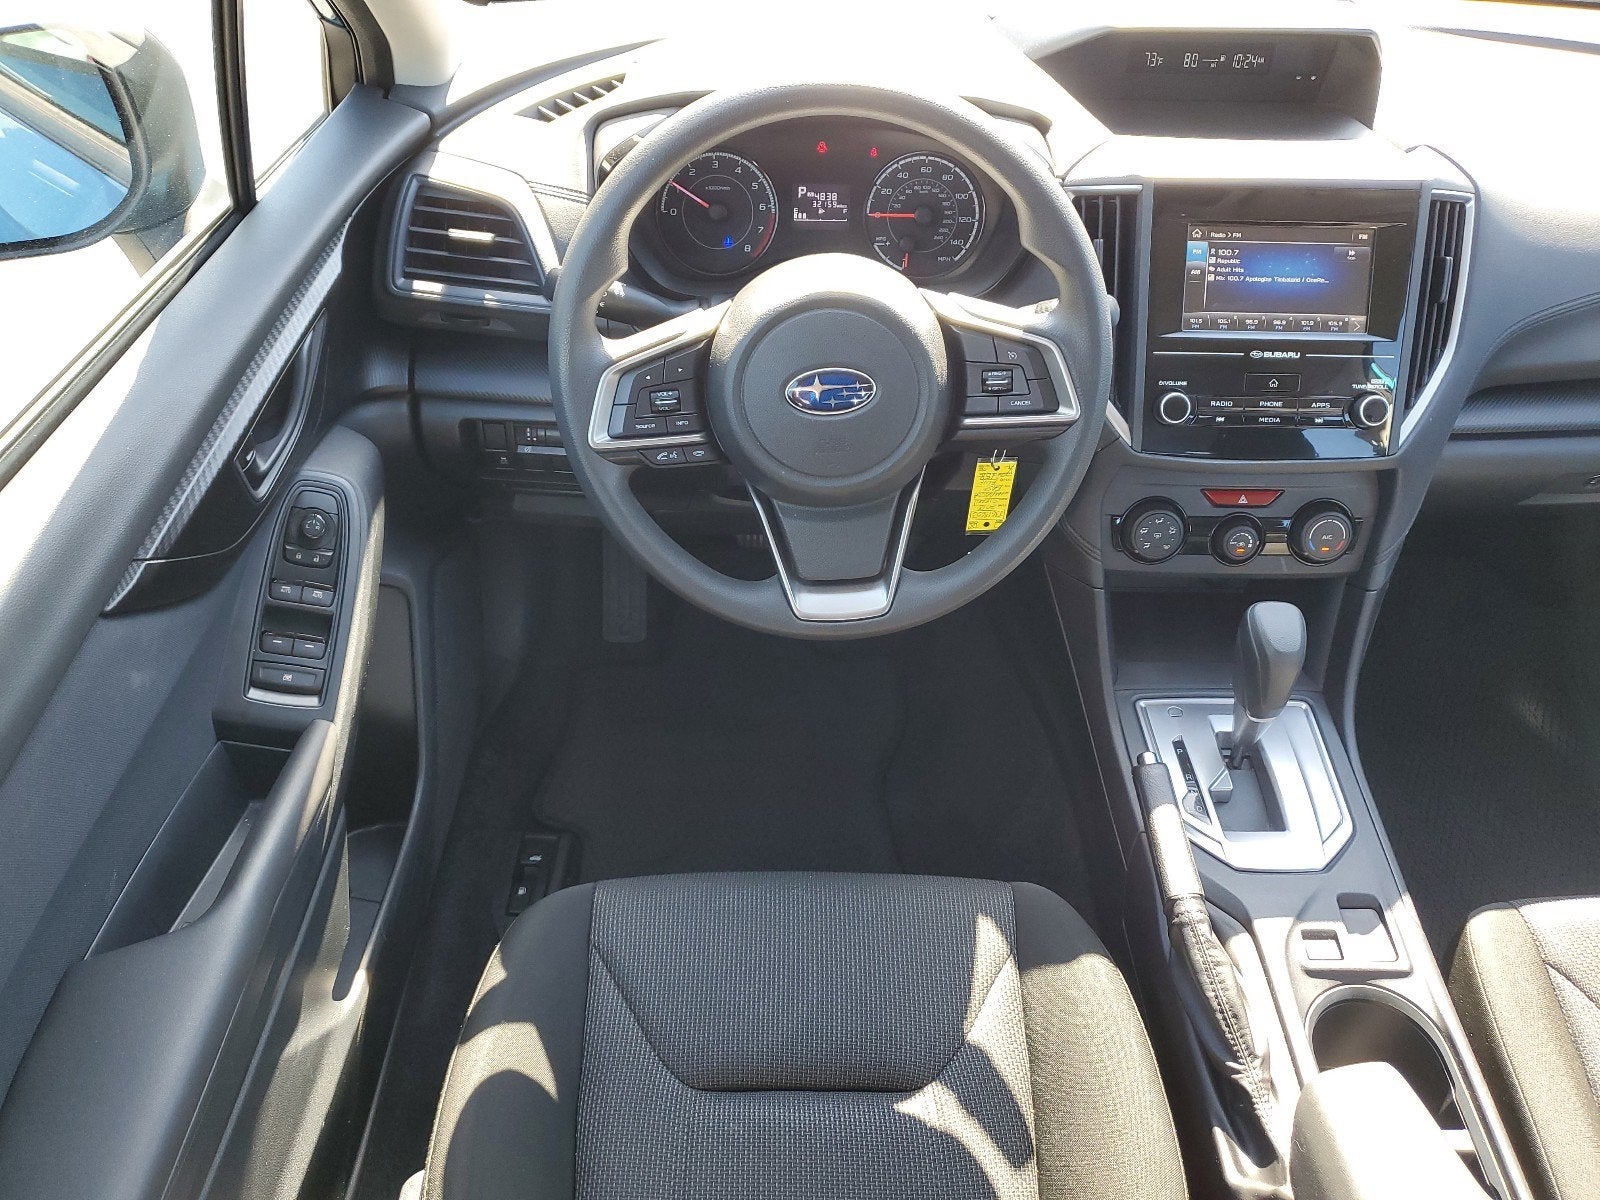 2018 Subaru Impreza 2.0i